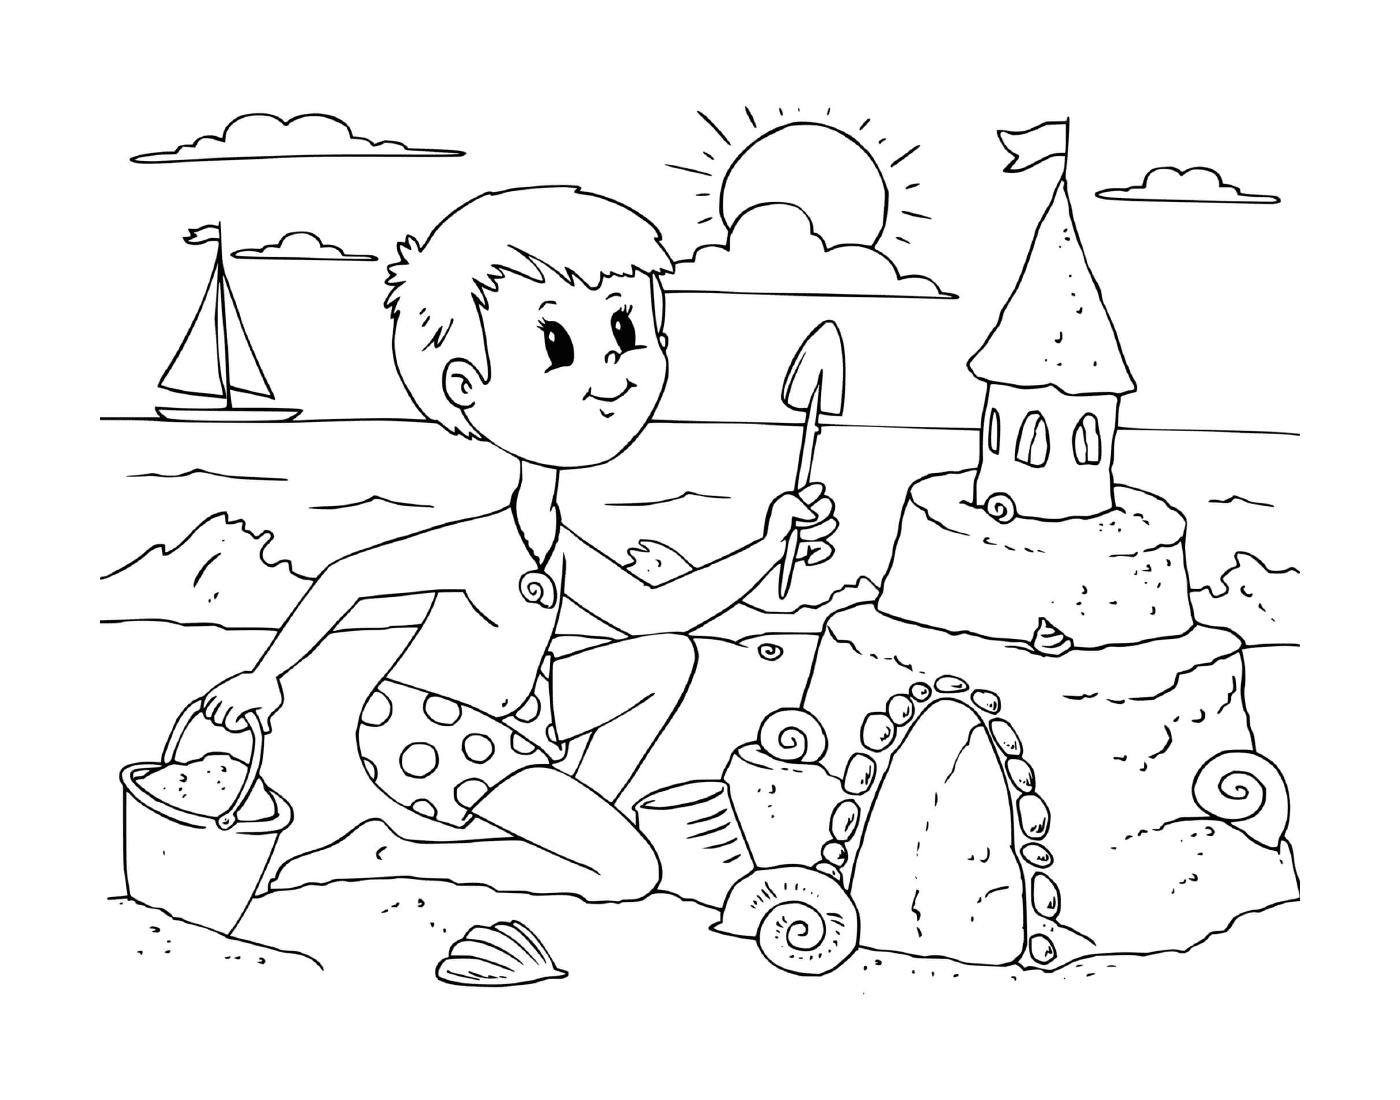  Um menino constrói um castelo de areia na praia 